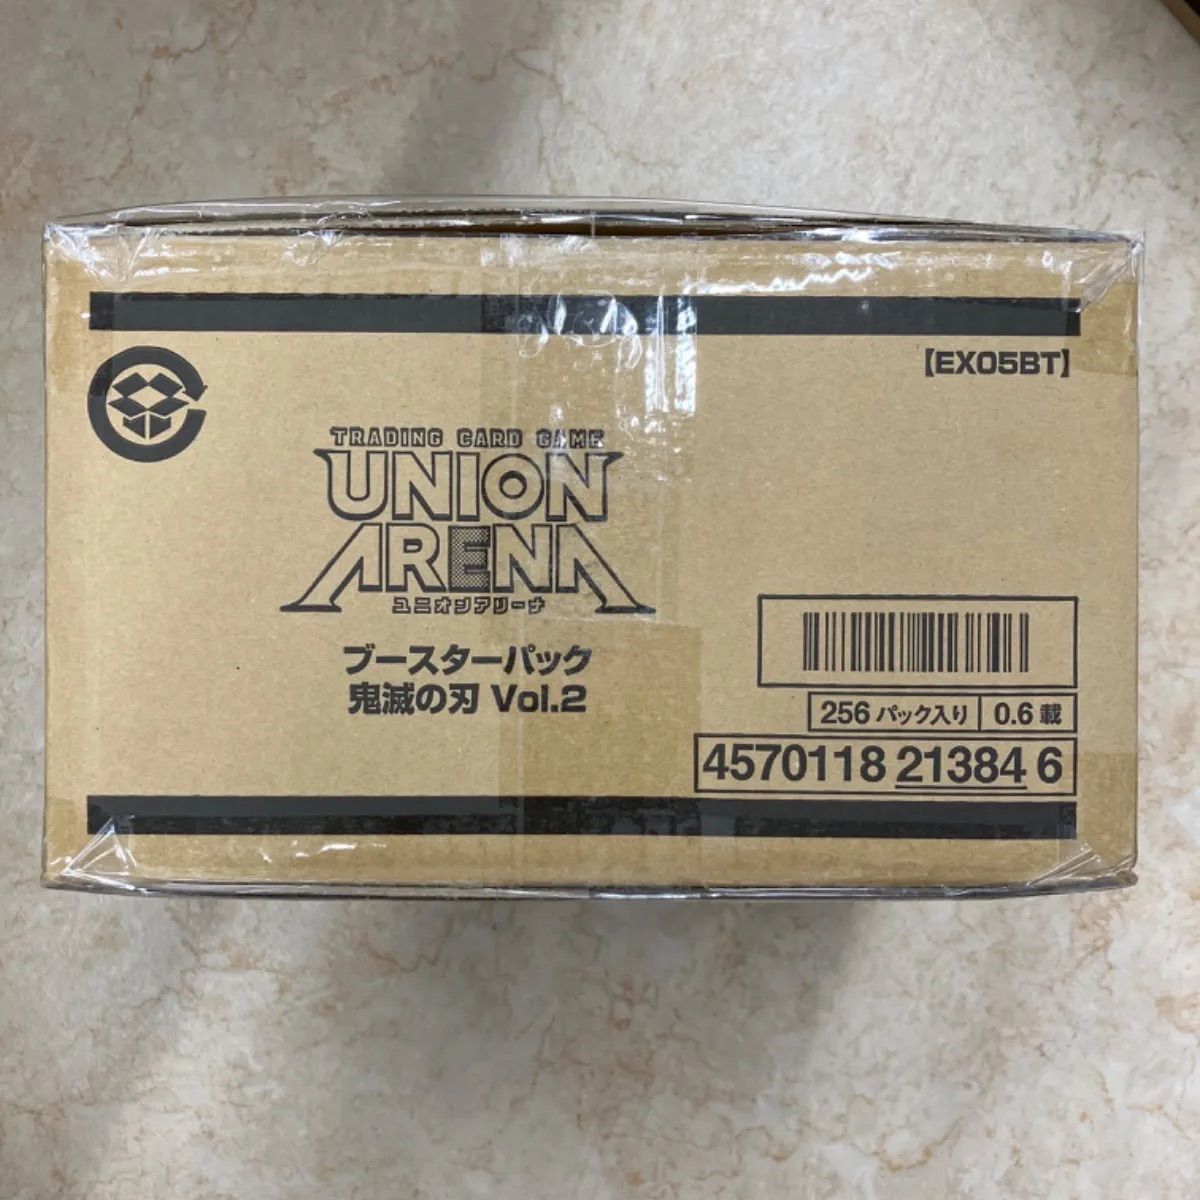 UNION ARENA ブースターパック 鬼滅の刃 Vol.2【EX05BT】1カートン 